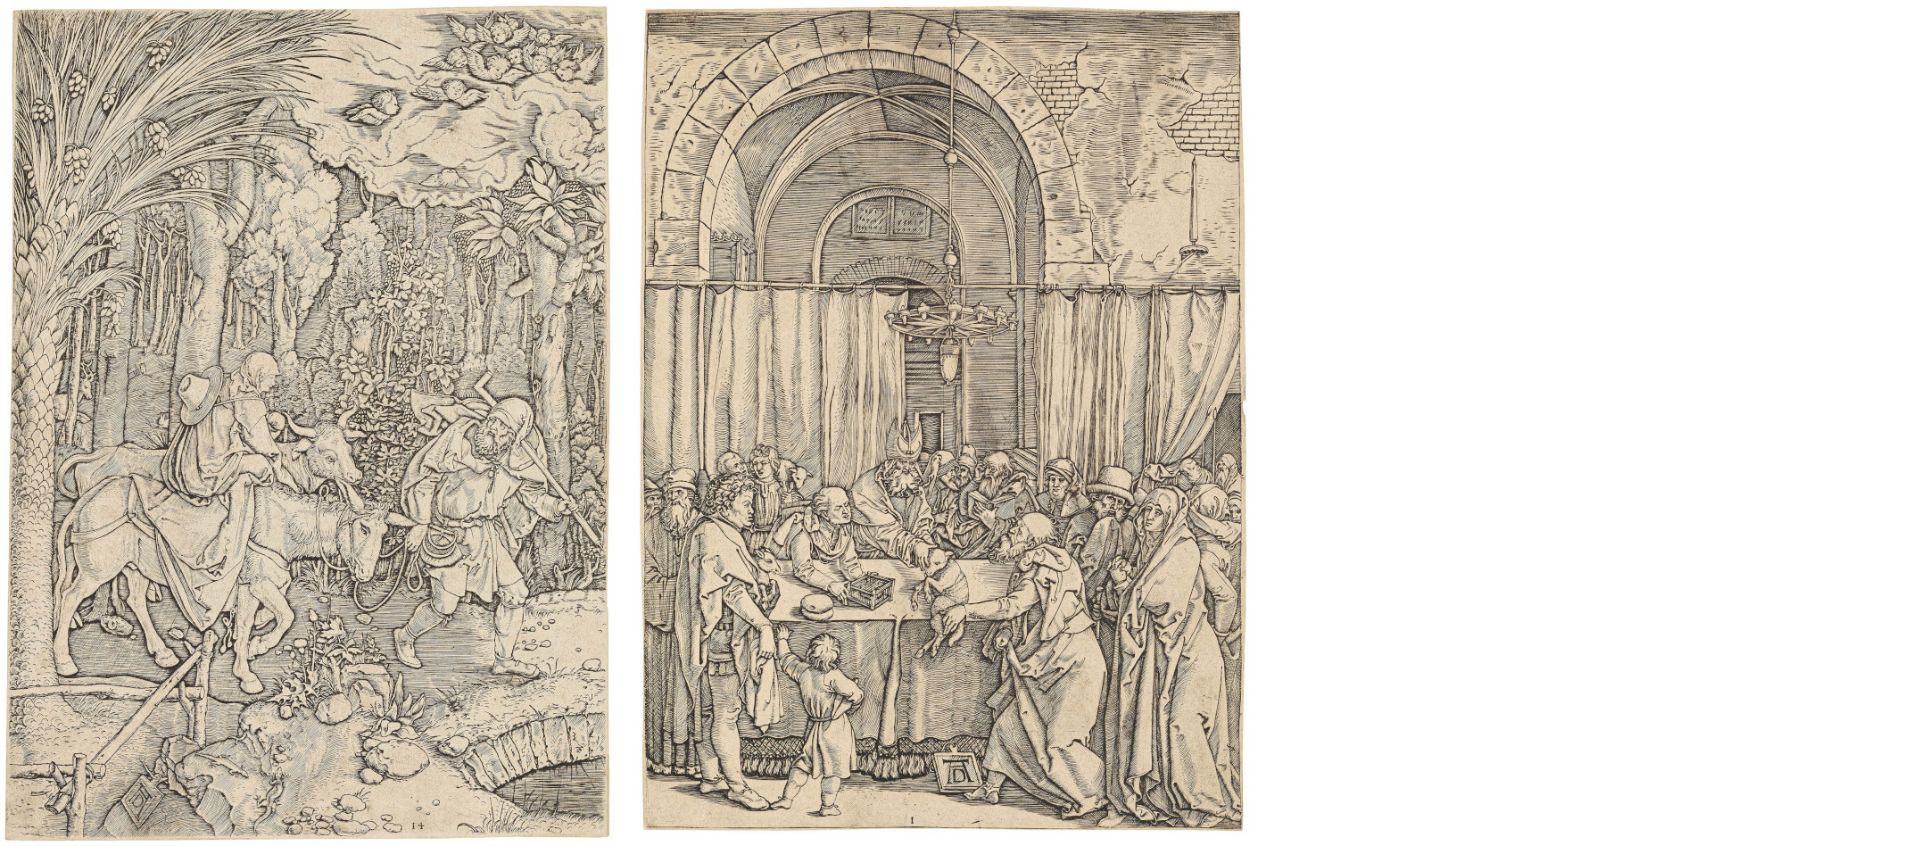 Marcantonio Raimondi ca. 1480 Molinella - 1534 Bologna: Life of the Virgin